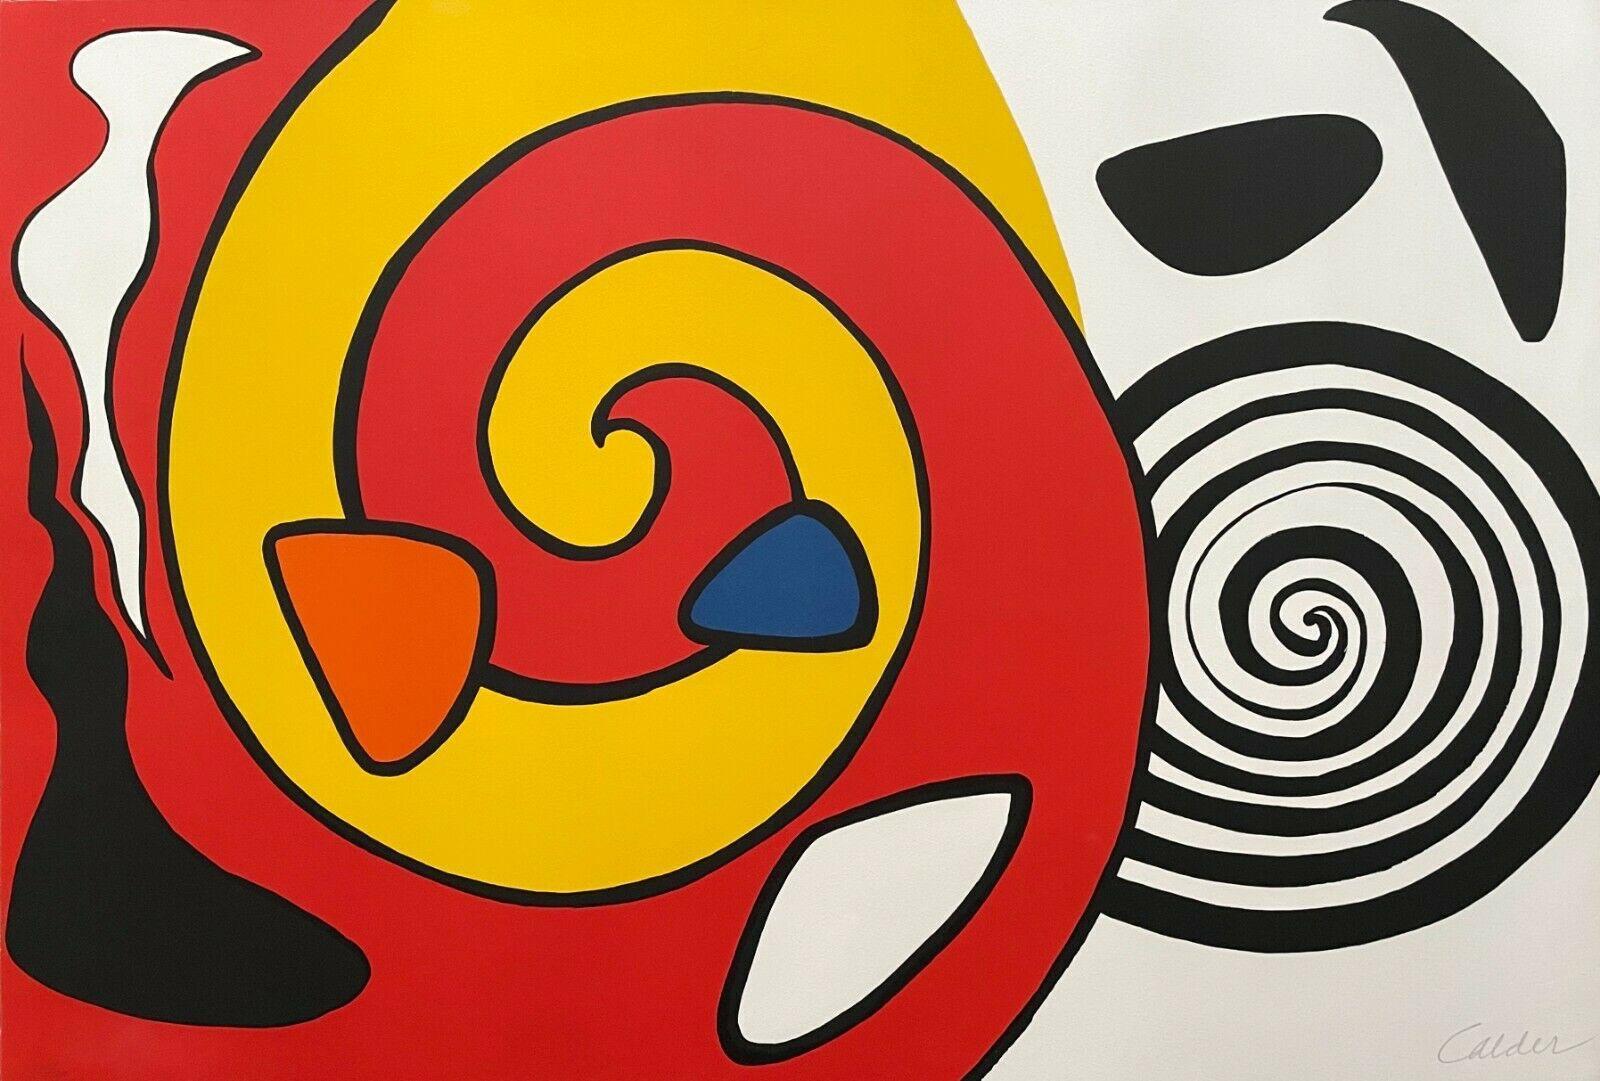 Alexander Calder Landscape Print - Untitled (Spirals and Forms)